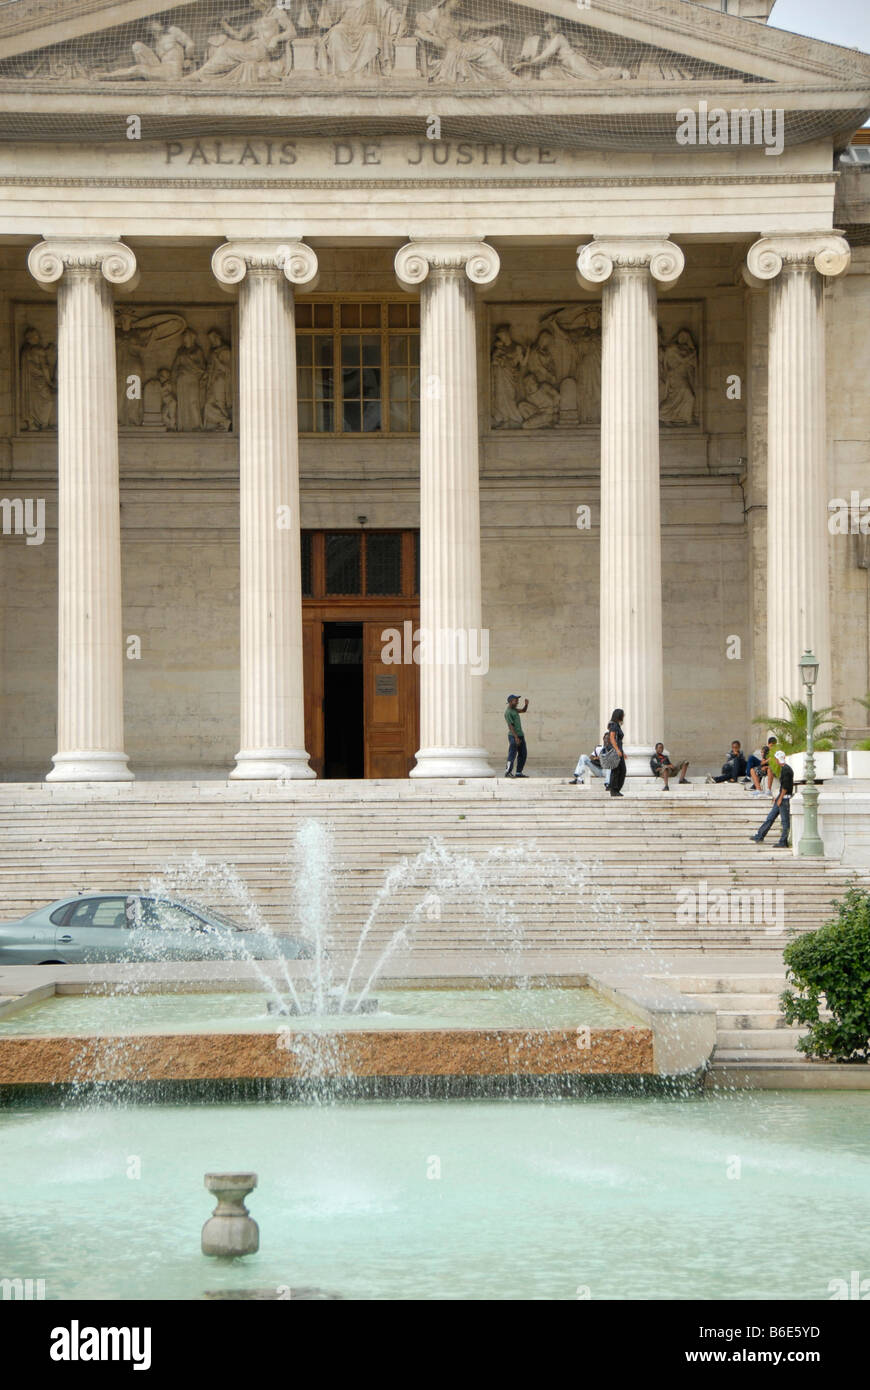 Le palais de justice et la fontaine, Marsaille, Provence, France, Europe Banque D'Images